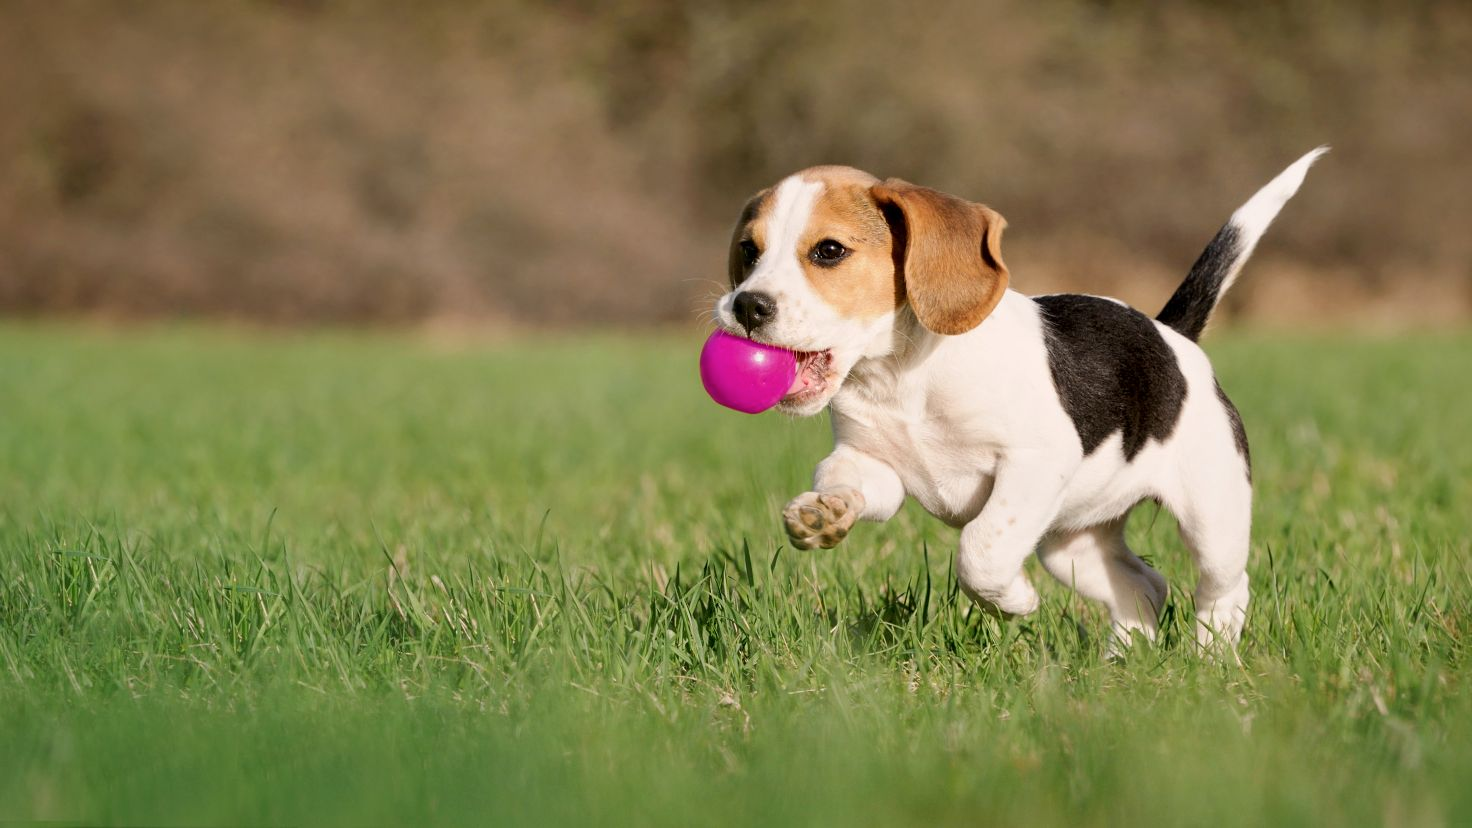 Cachorro de Beagle corriendo con una bola rosa en la boca